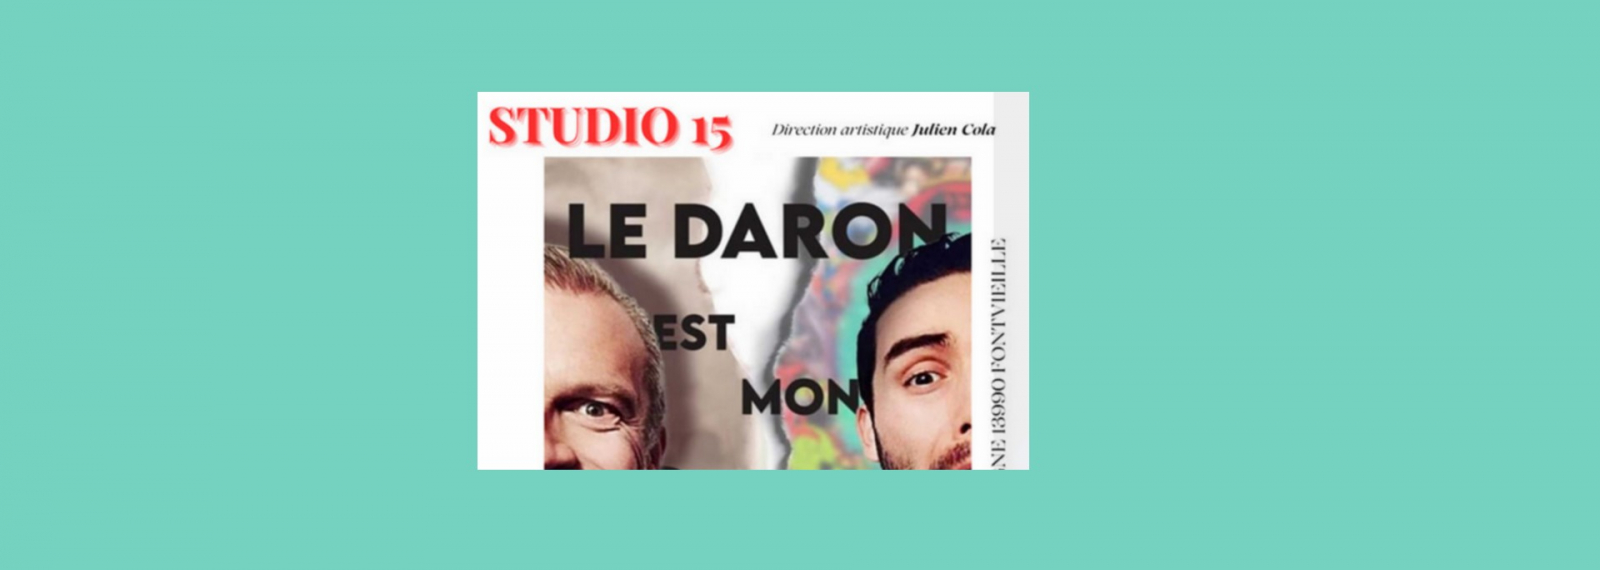 Soirée Théâtre - Studio 15 - 'Le daron est mon coloc' de John-John